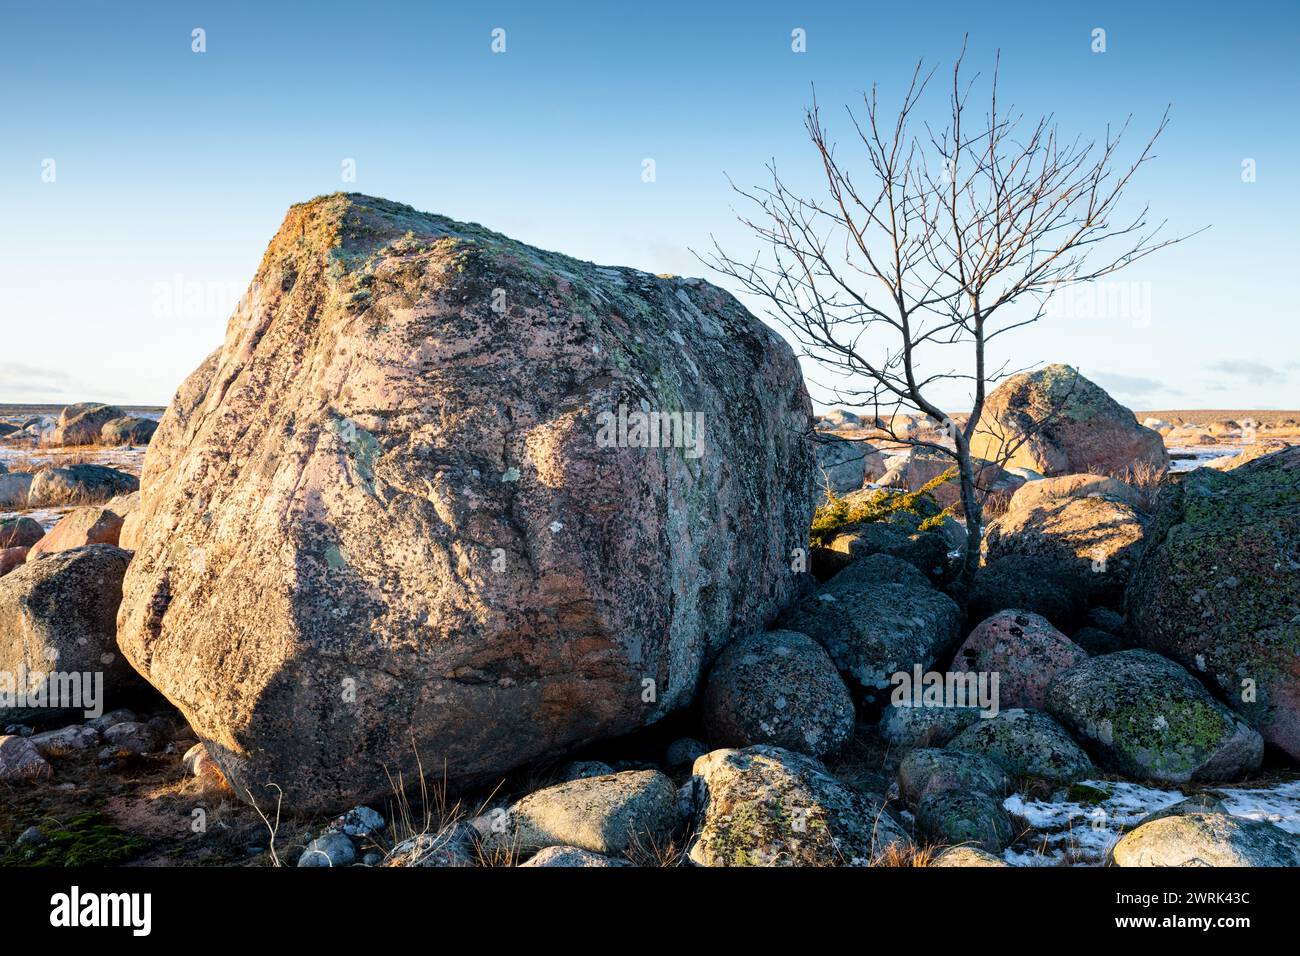 ROCHE IRRÉGULIÈRE GLACIAIRE, ARBRE, JURMO, MER BALTIQUE : la vie trouve un chemin! Une grande roche irrégulière glaciaire dans un champ de roches avec un petit arbre poussant à côté sur Jurmo, une petite île de l'archipel de Turku, au large de la côte sud-ouest de la Finlande. Photo : Rob Watkins. INFO : Jurmo a une population d'environ 50 personnes, et est connu pour son terrain accidenté, ses paysages pittoresques et sa flore et sa faune uniques. Jurmo est la dernière partie aérienne du système géologique de crêtes de Salpausselkä de l'âge glaciaire, qui traverse la Finlande. Banque D'Images